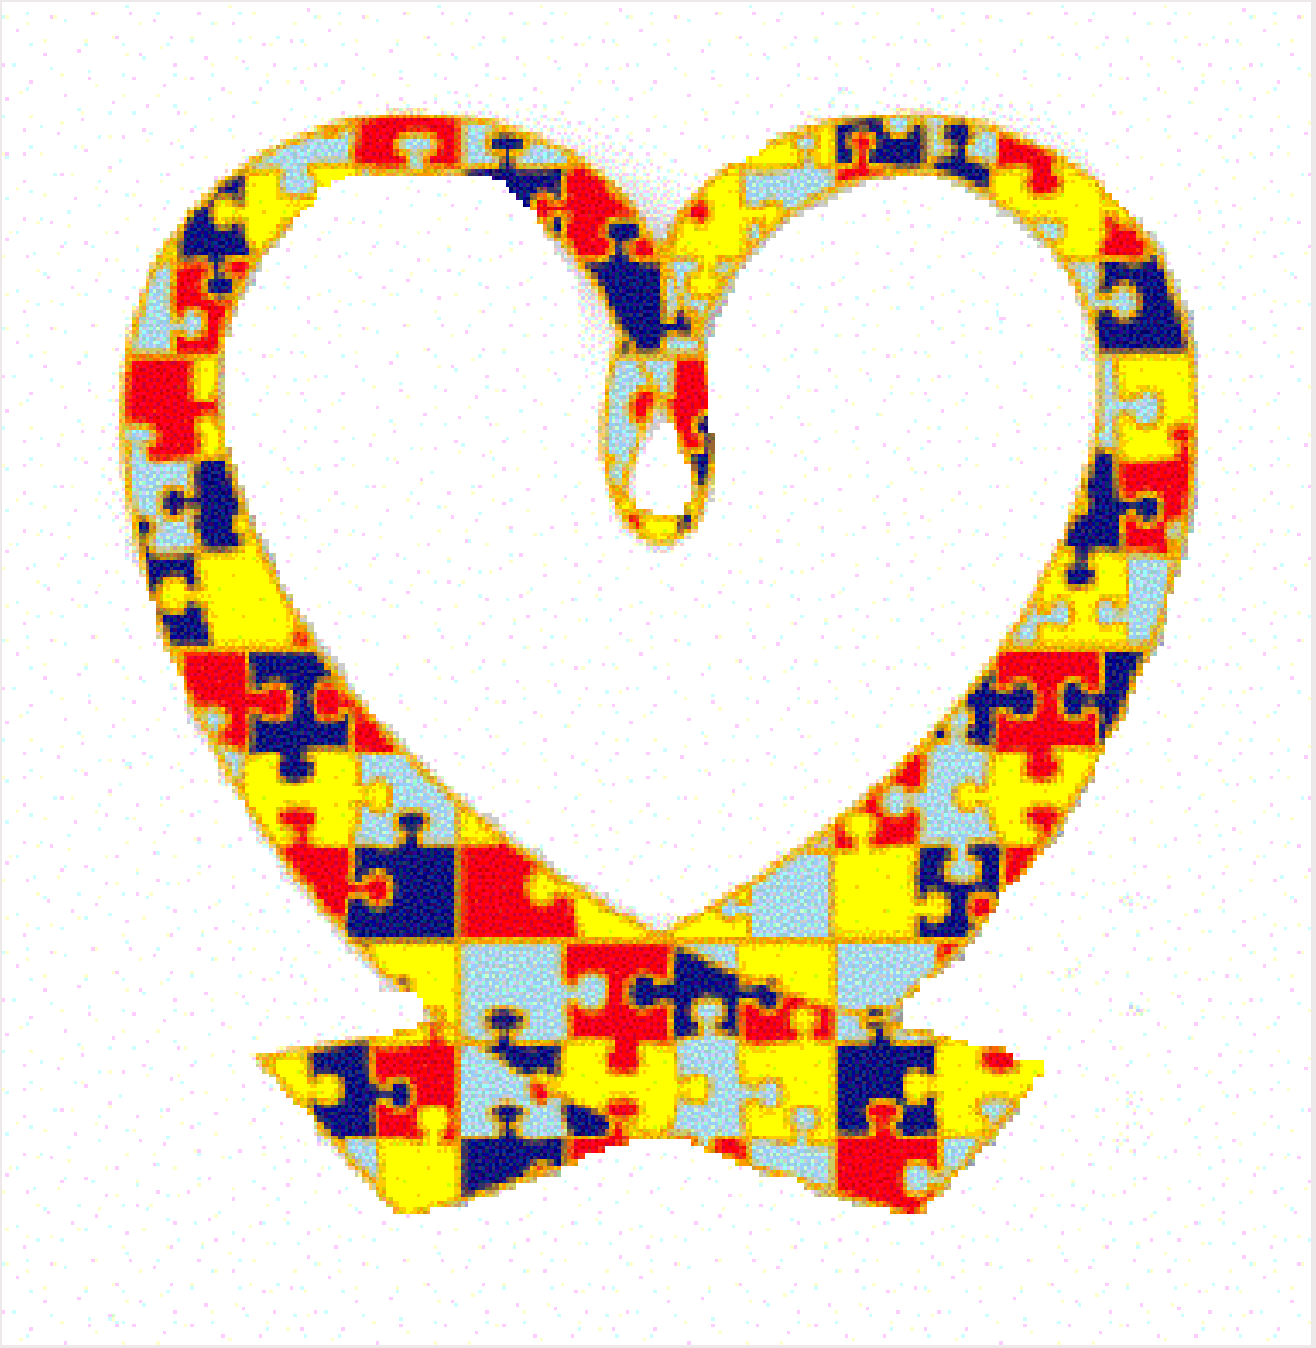 Autism Awareness Puzzle Piece Clip Art - ClipArt Best